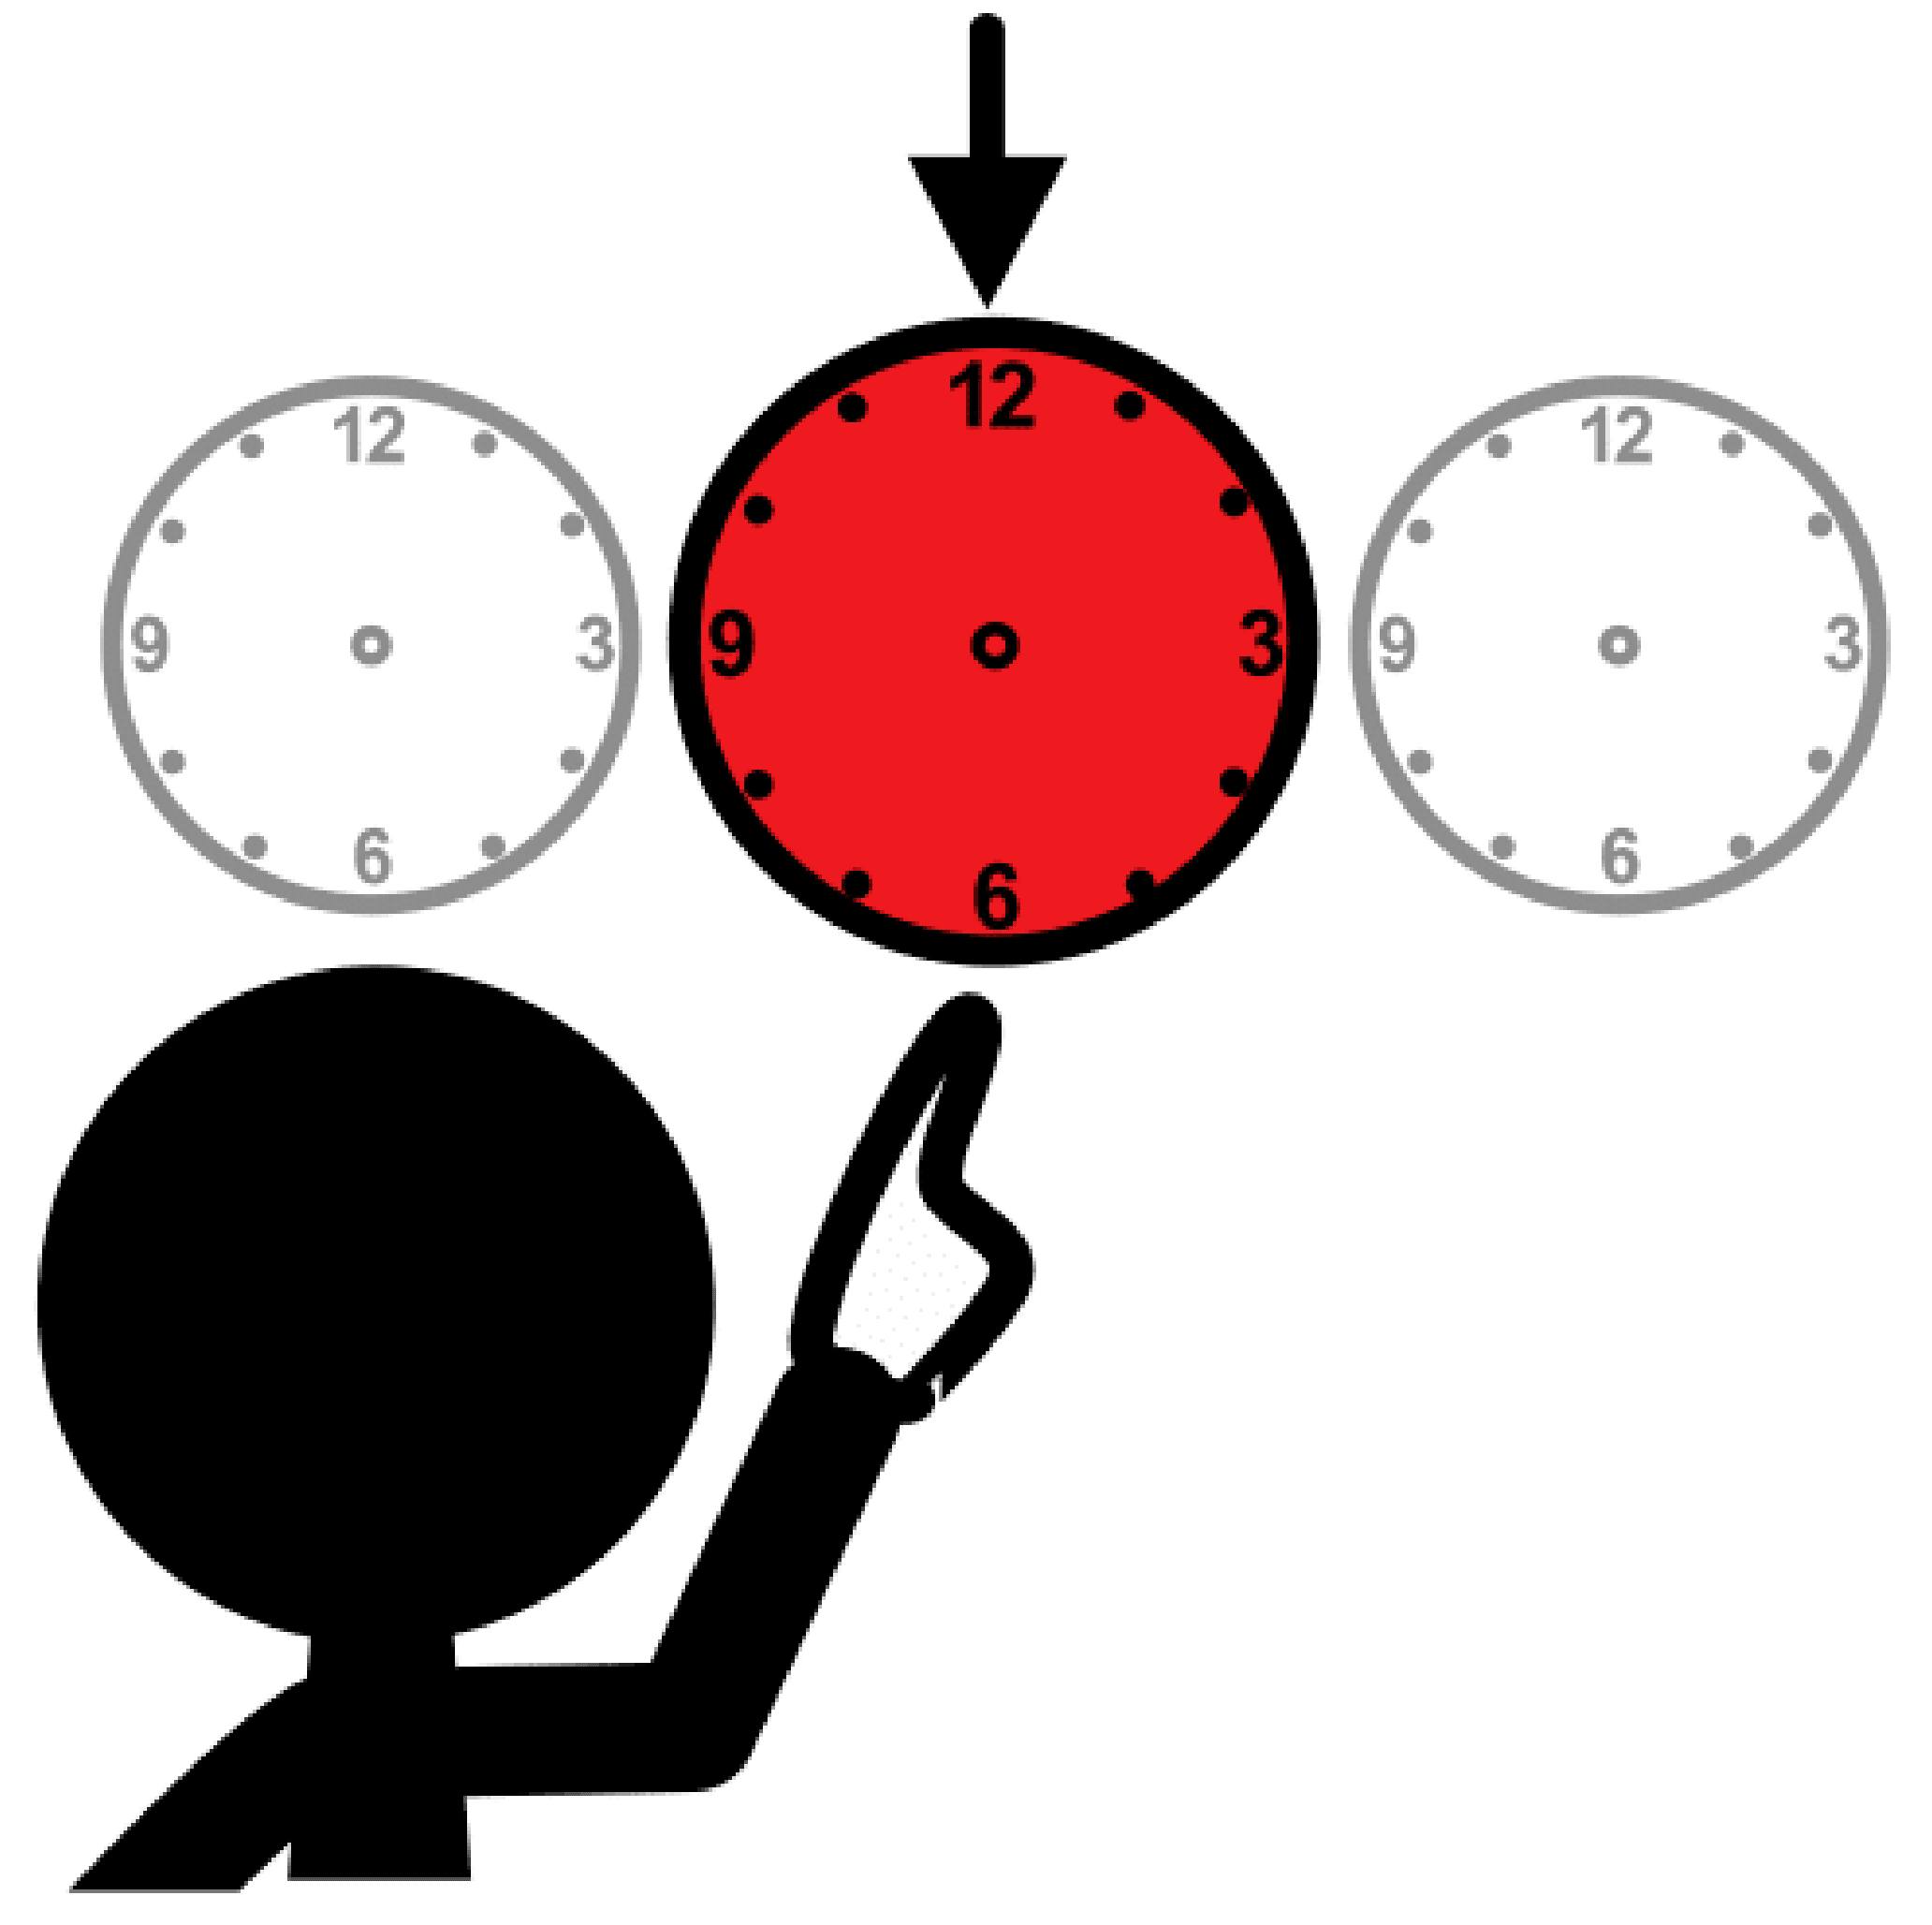 Tres relojes, el del centro de color rojo, con una flecha señalándolo. Una silueta en negro señala al reloj rojo con la mano.